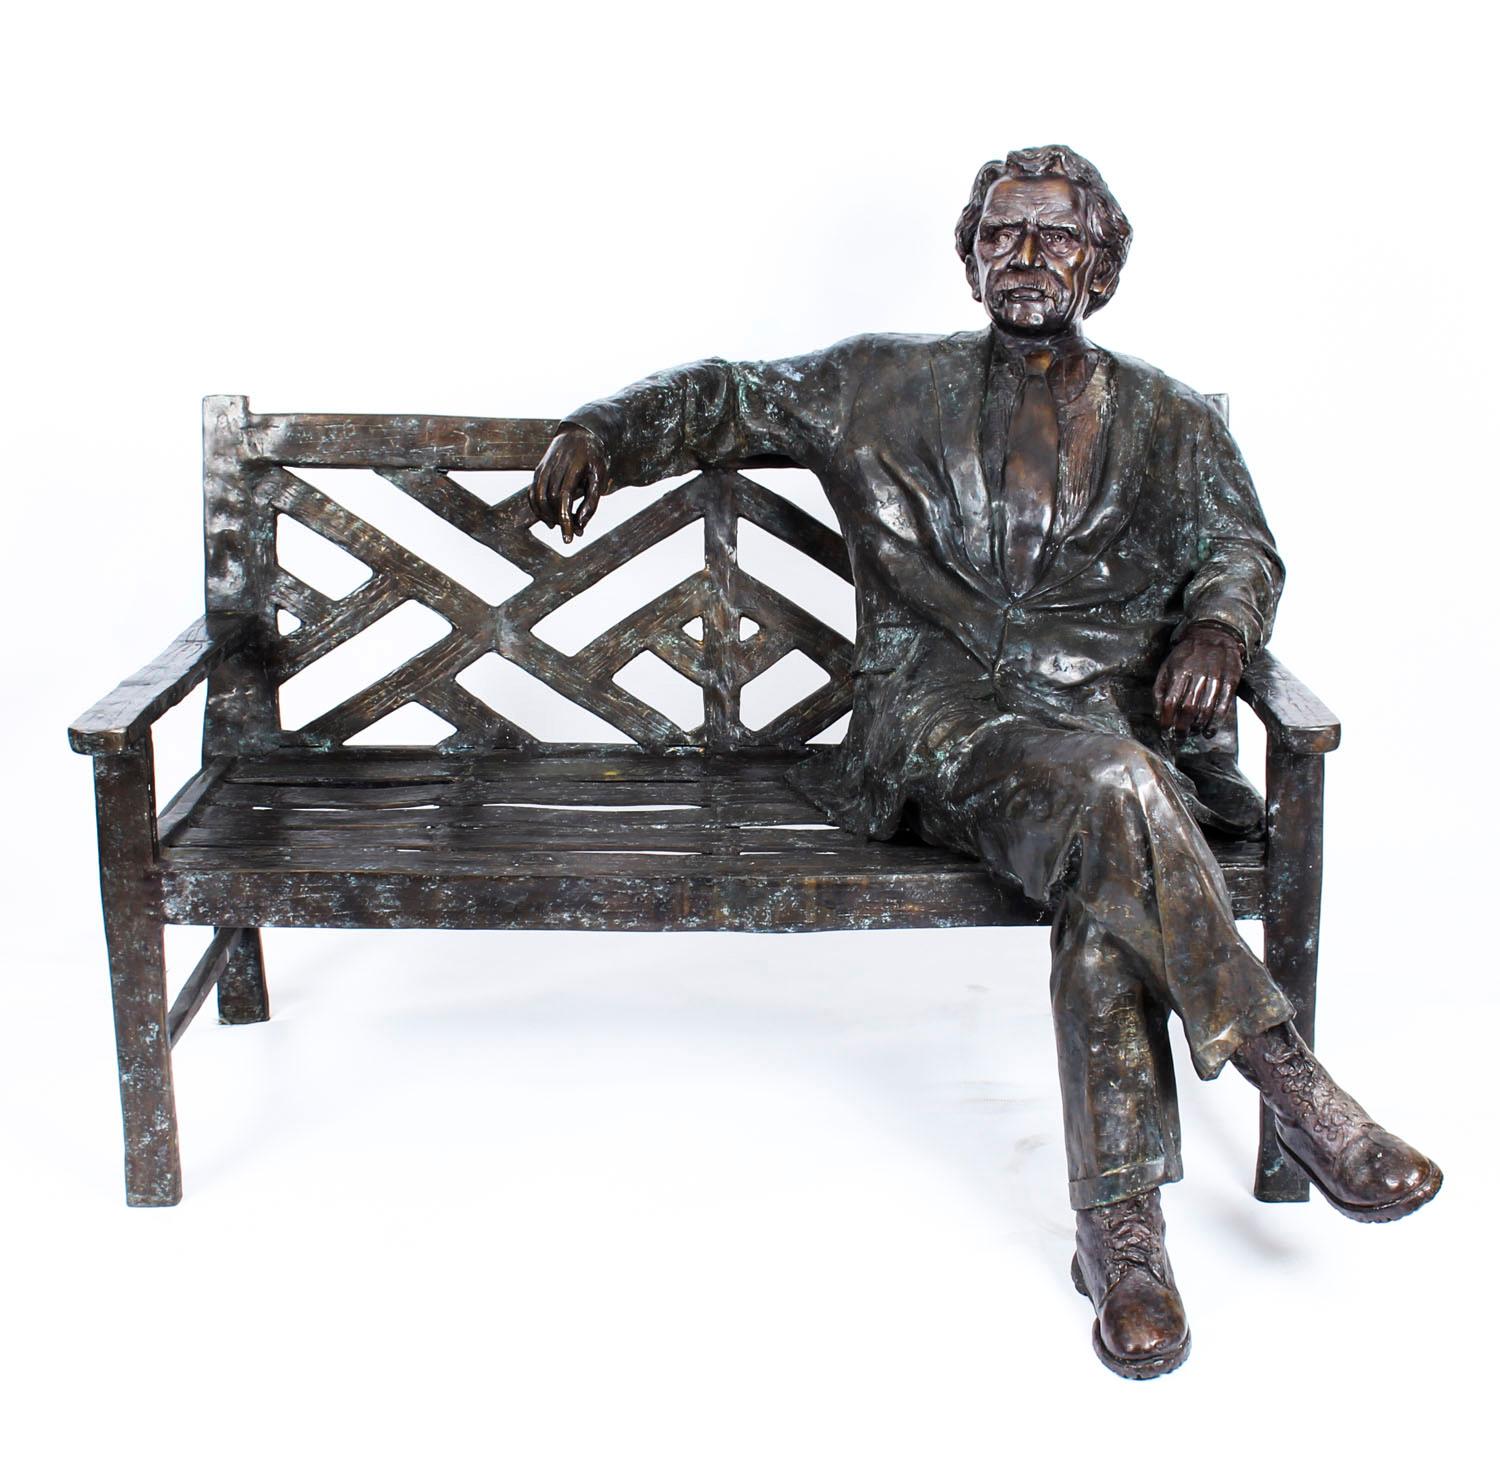 Il s'agit d'une spectaculaire statue vintage en bronze, plus grande que nature, du physicien théoricien d'origine allemande Albert Einstein, assis de manière détendue et informelle sur un banc extérieur. Elle date de la fin du XXe siècle.

Cette